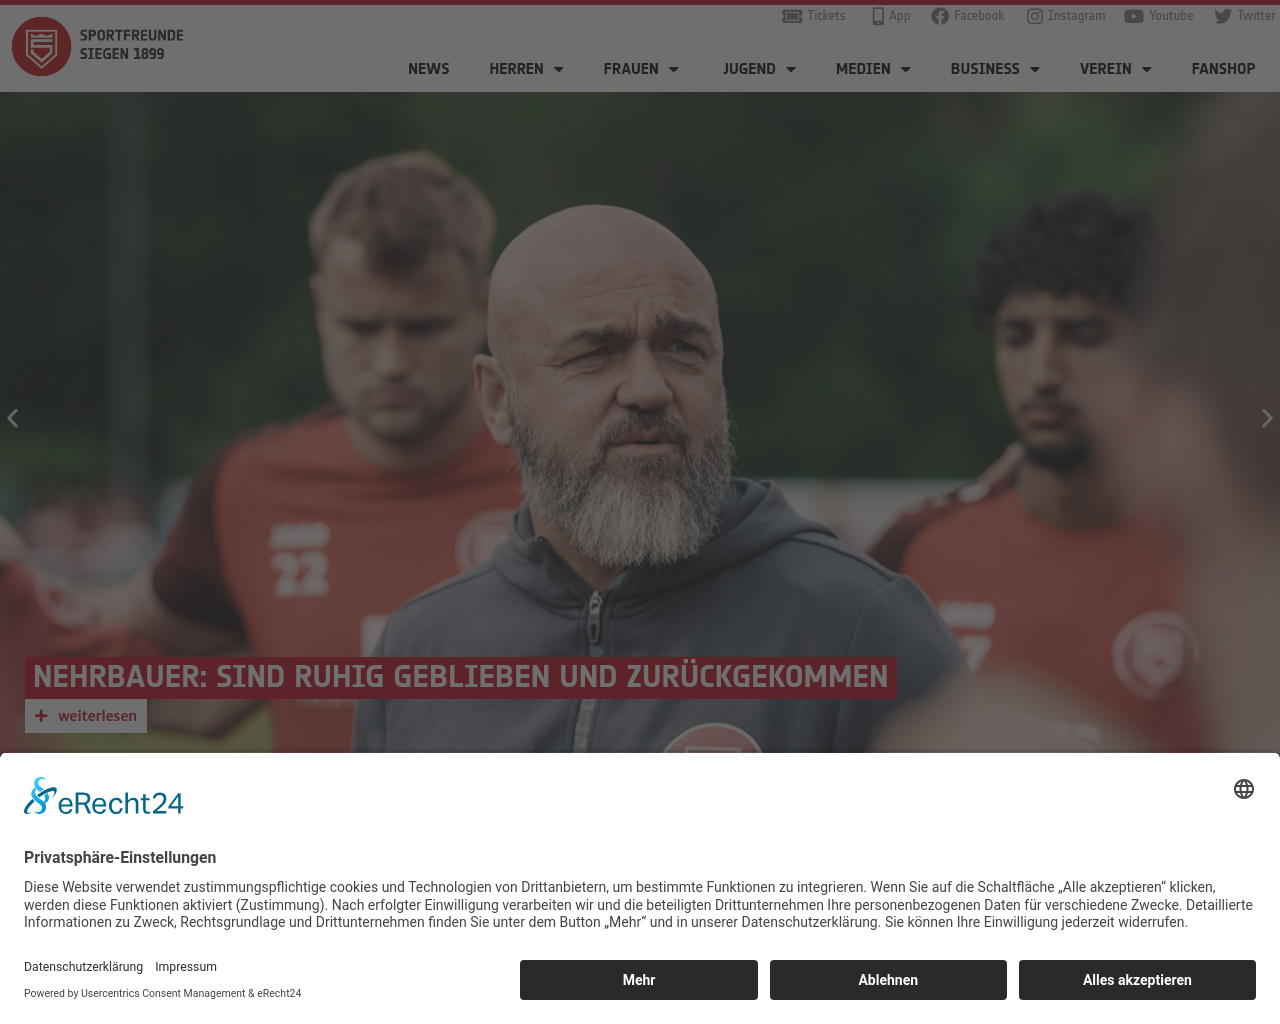 sportfreunde-siegen.de